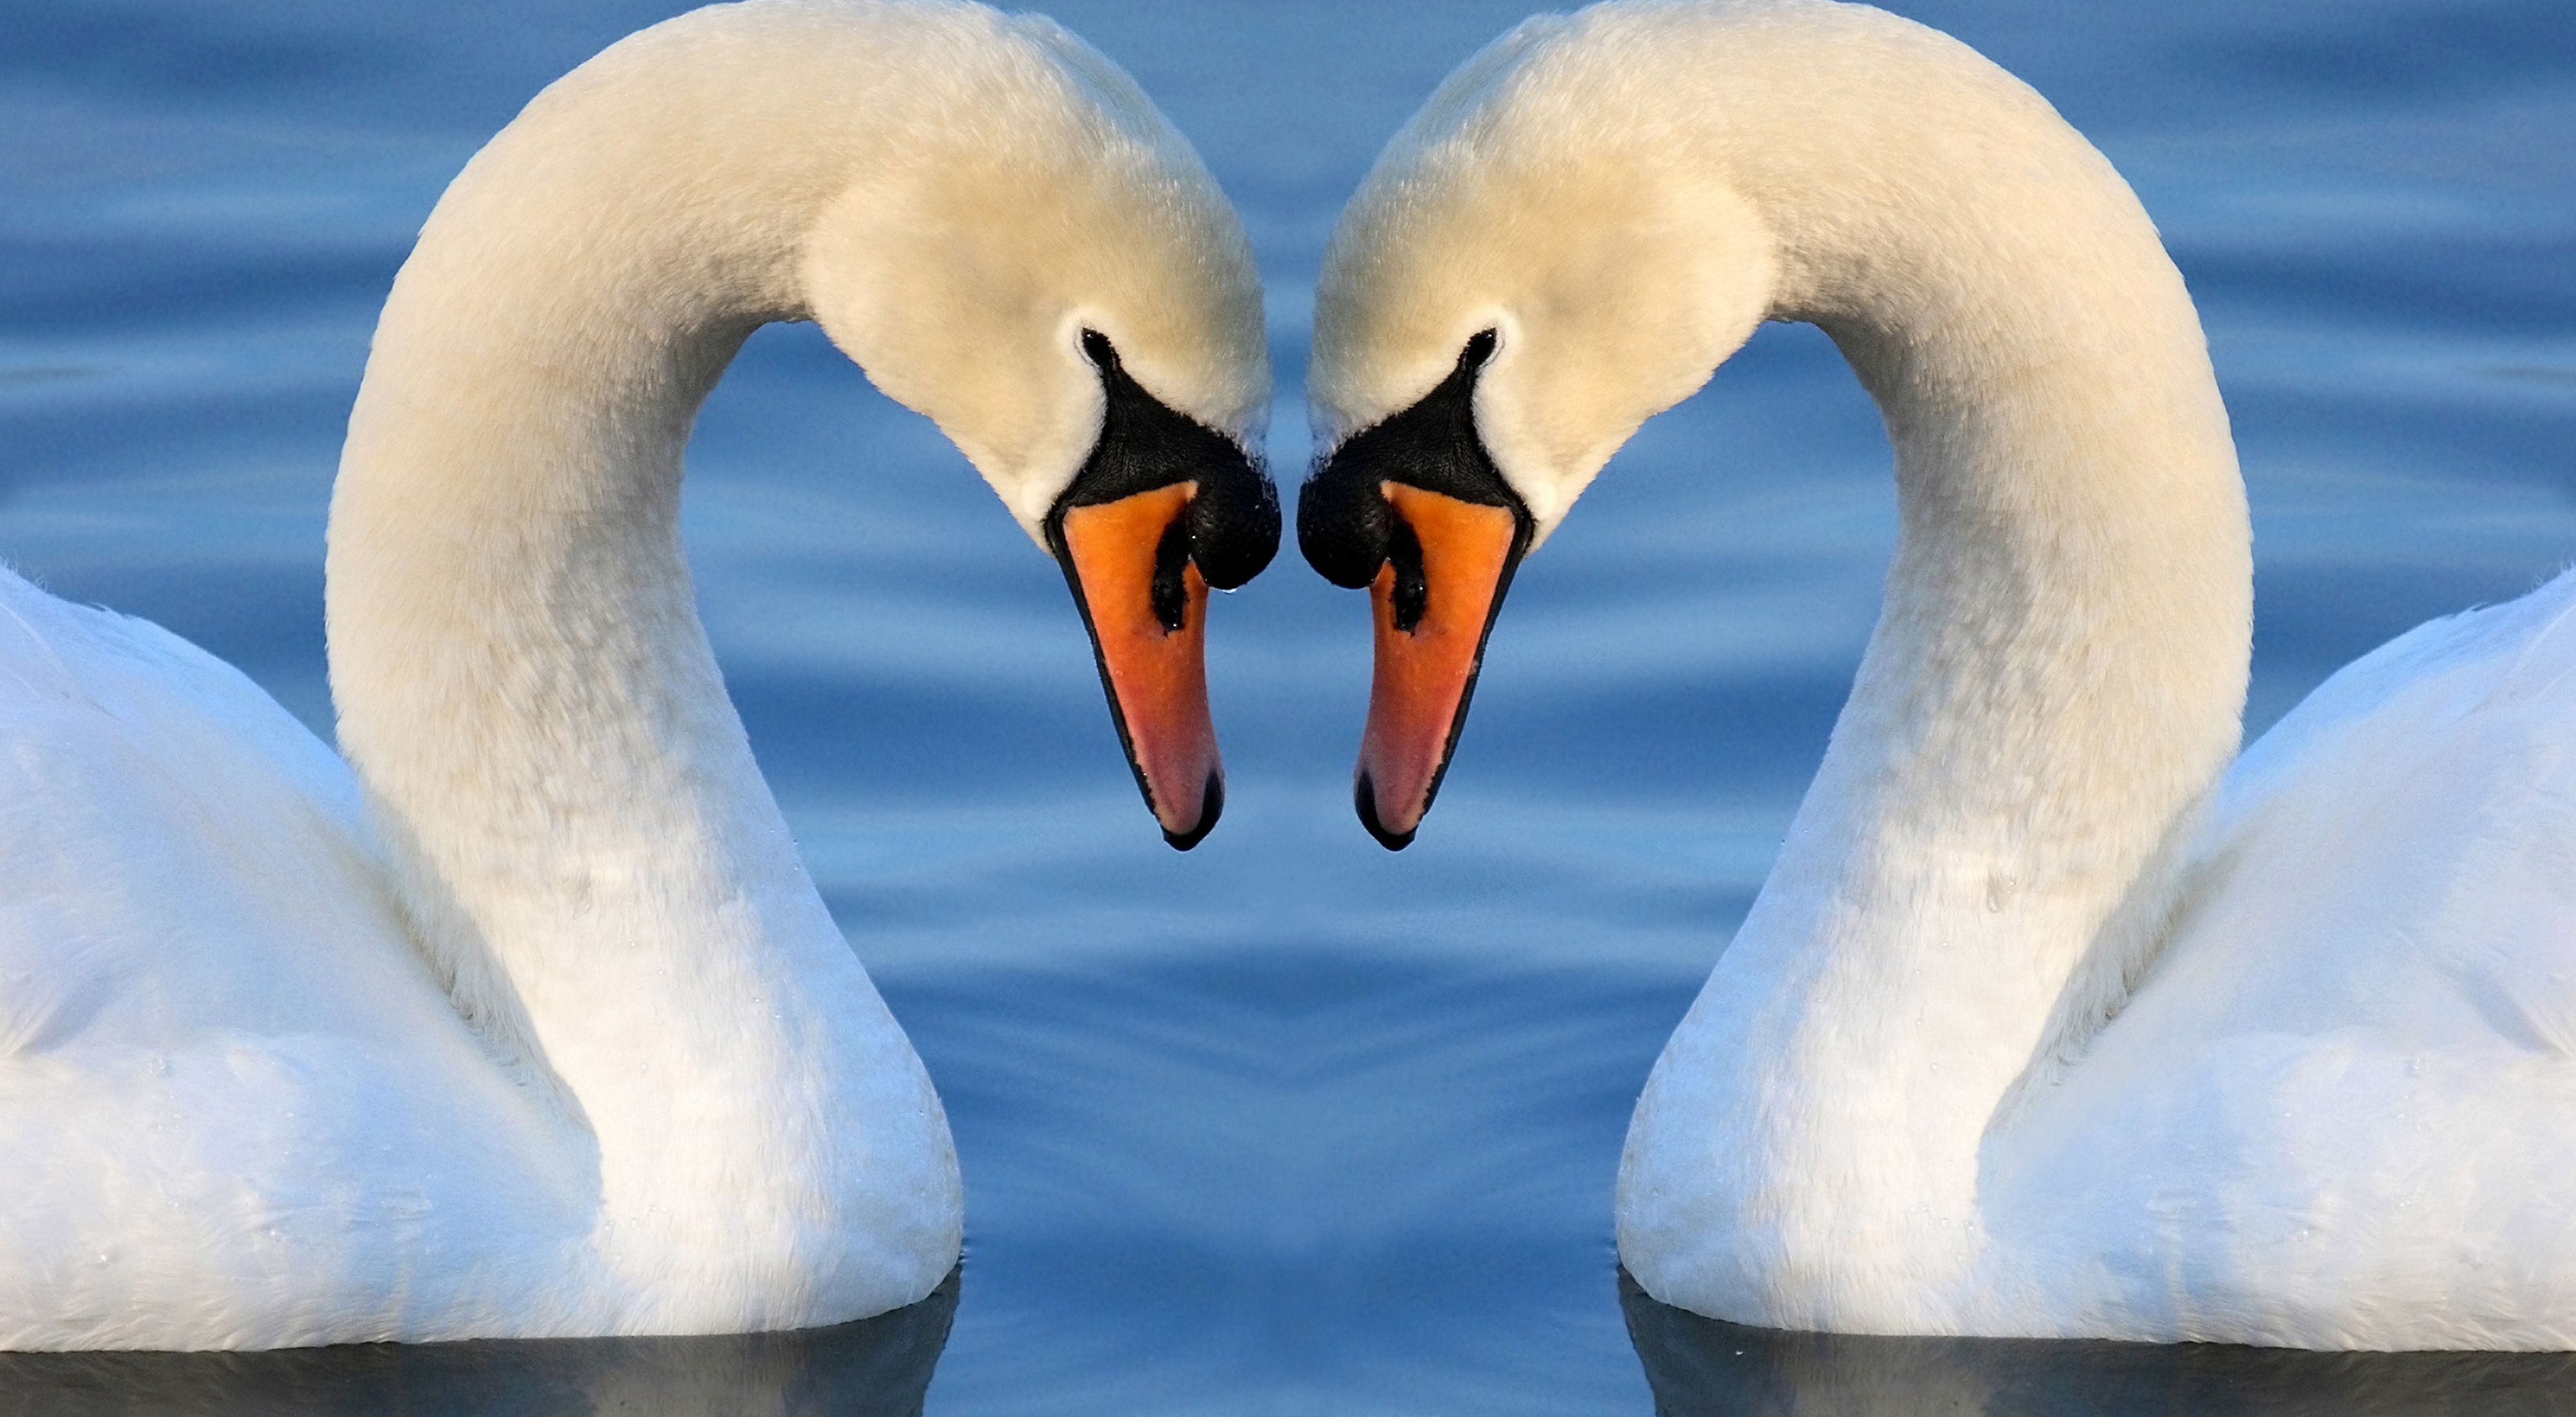 Dos cisnes tocan sus cabezas, y con sus cuellos forman la silhueta de un corazón.